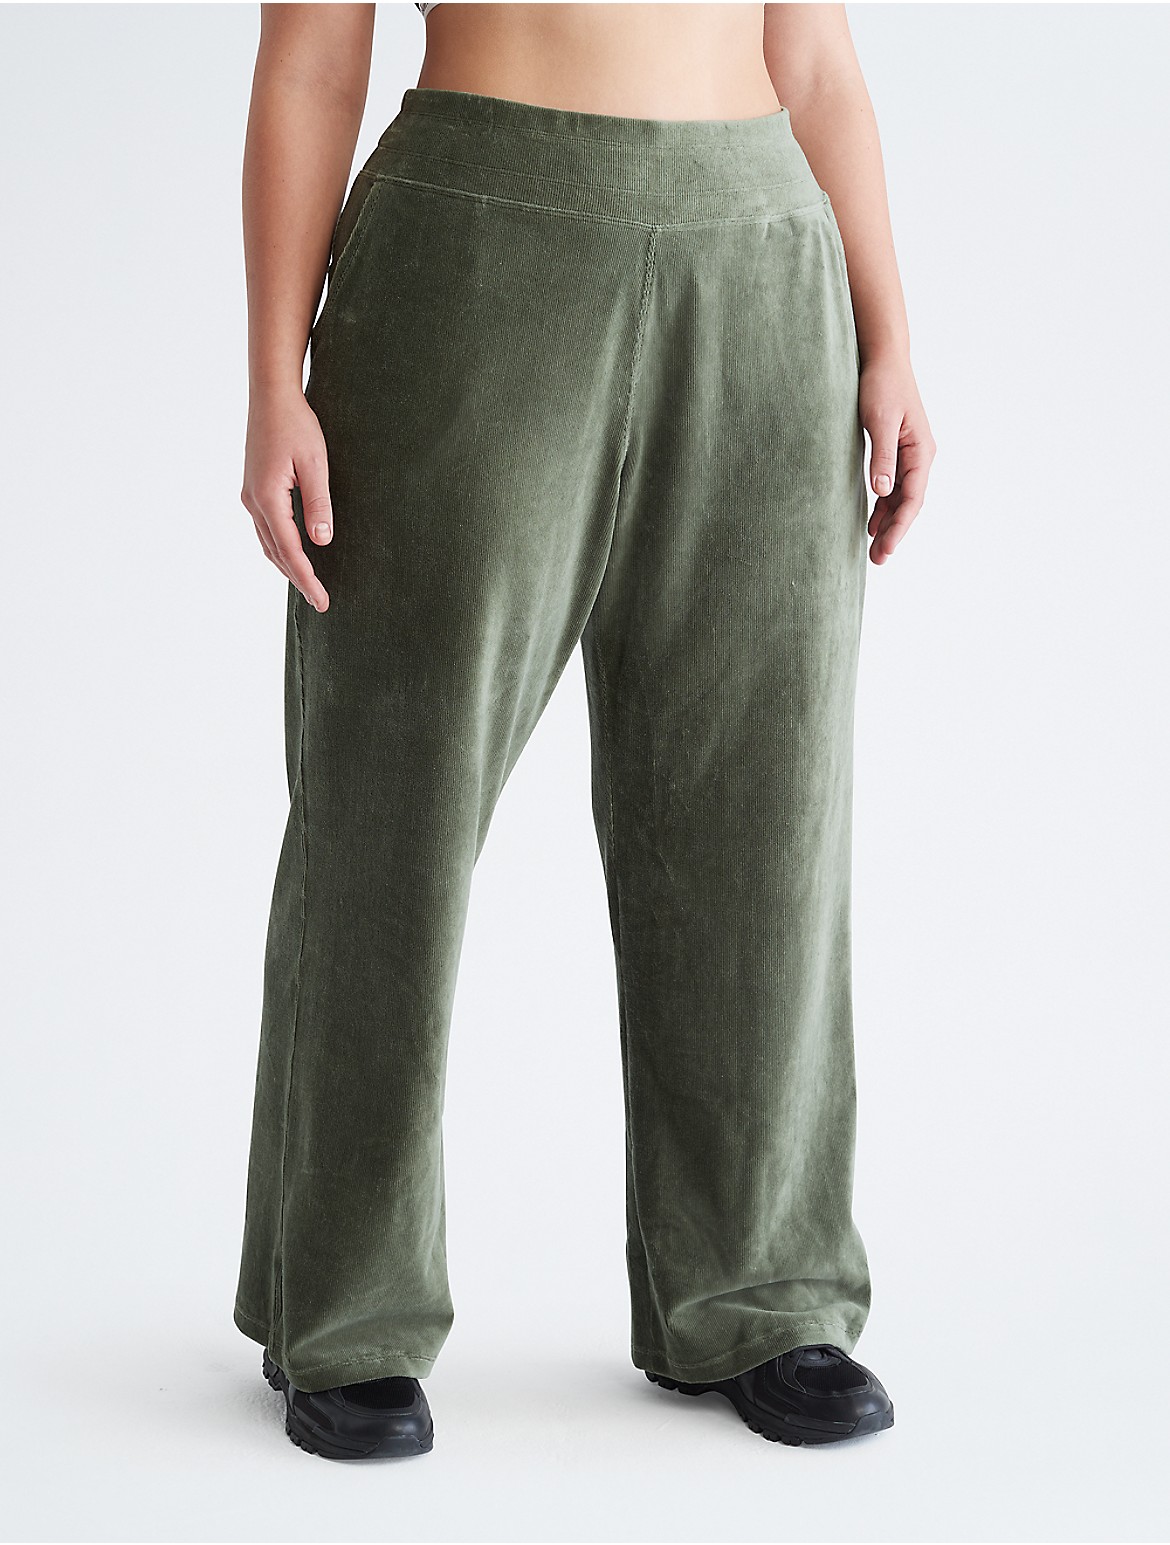 Calvin Klein Women's Plus Size Performance Wide Leg Pants - Green - 3X